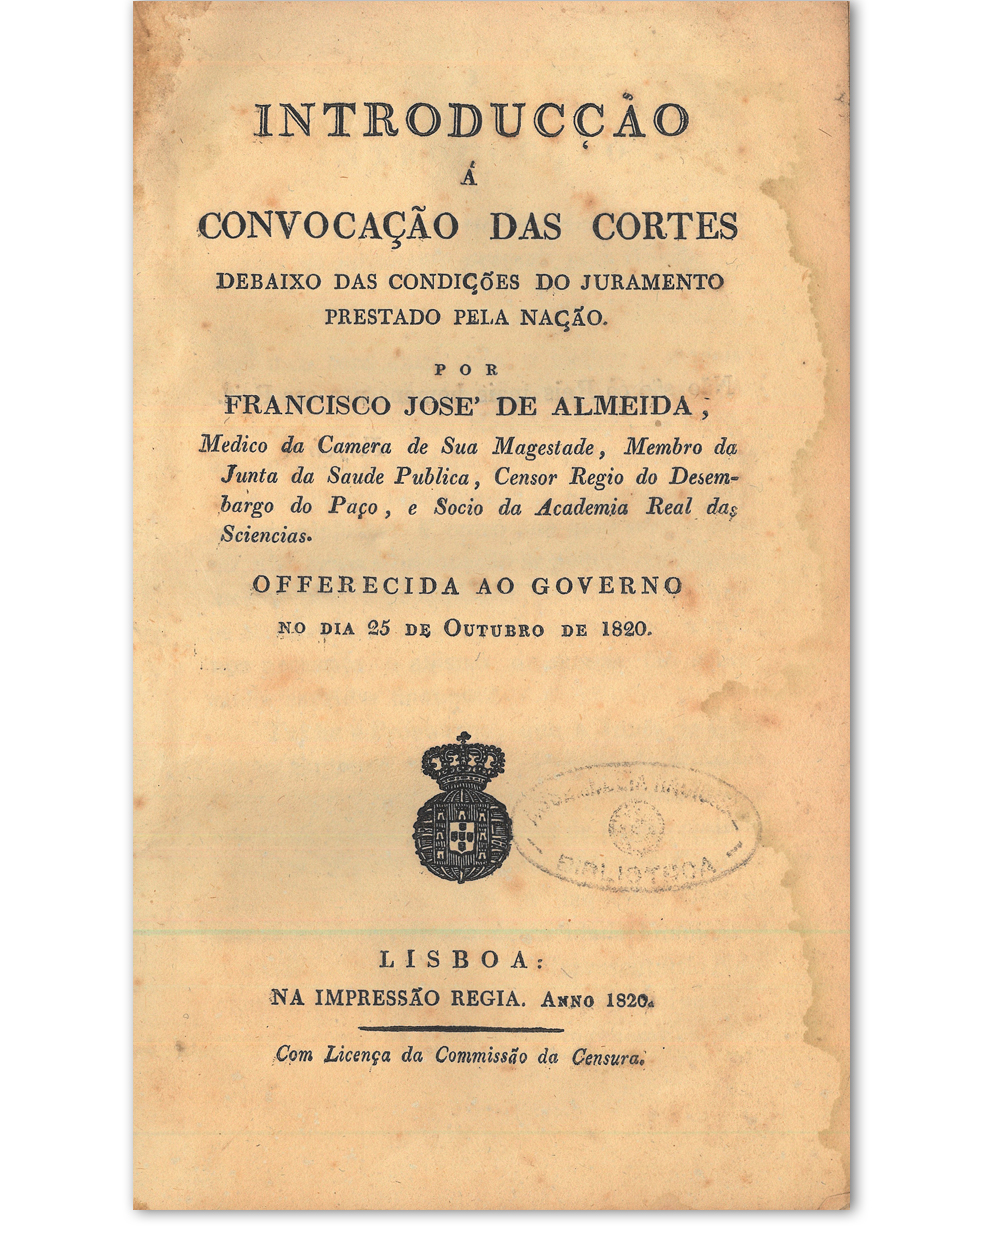 Introducção à convocação das Cortes debaixo das condições do juramento prestado pela nação / Francisco José de Almeida. Lisboa : na Impressão Régia, 1820. Cota: 2/1820